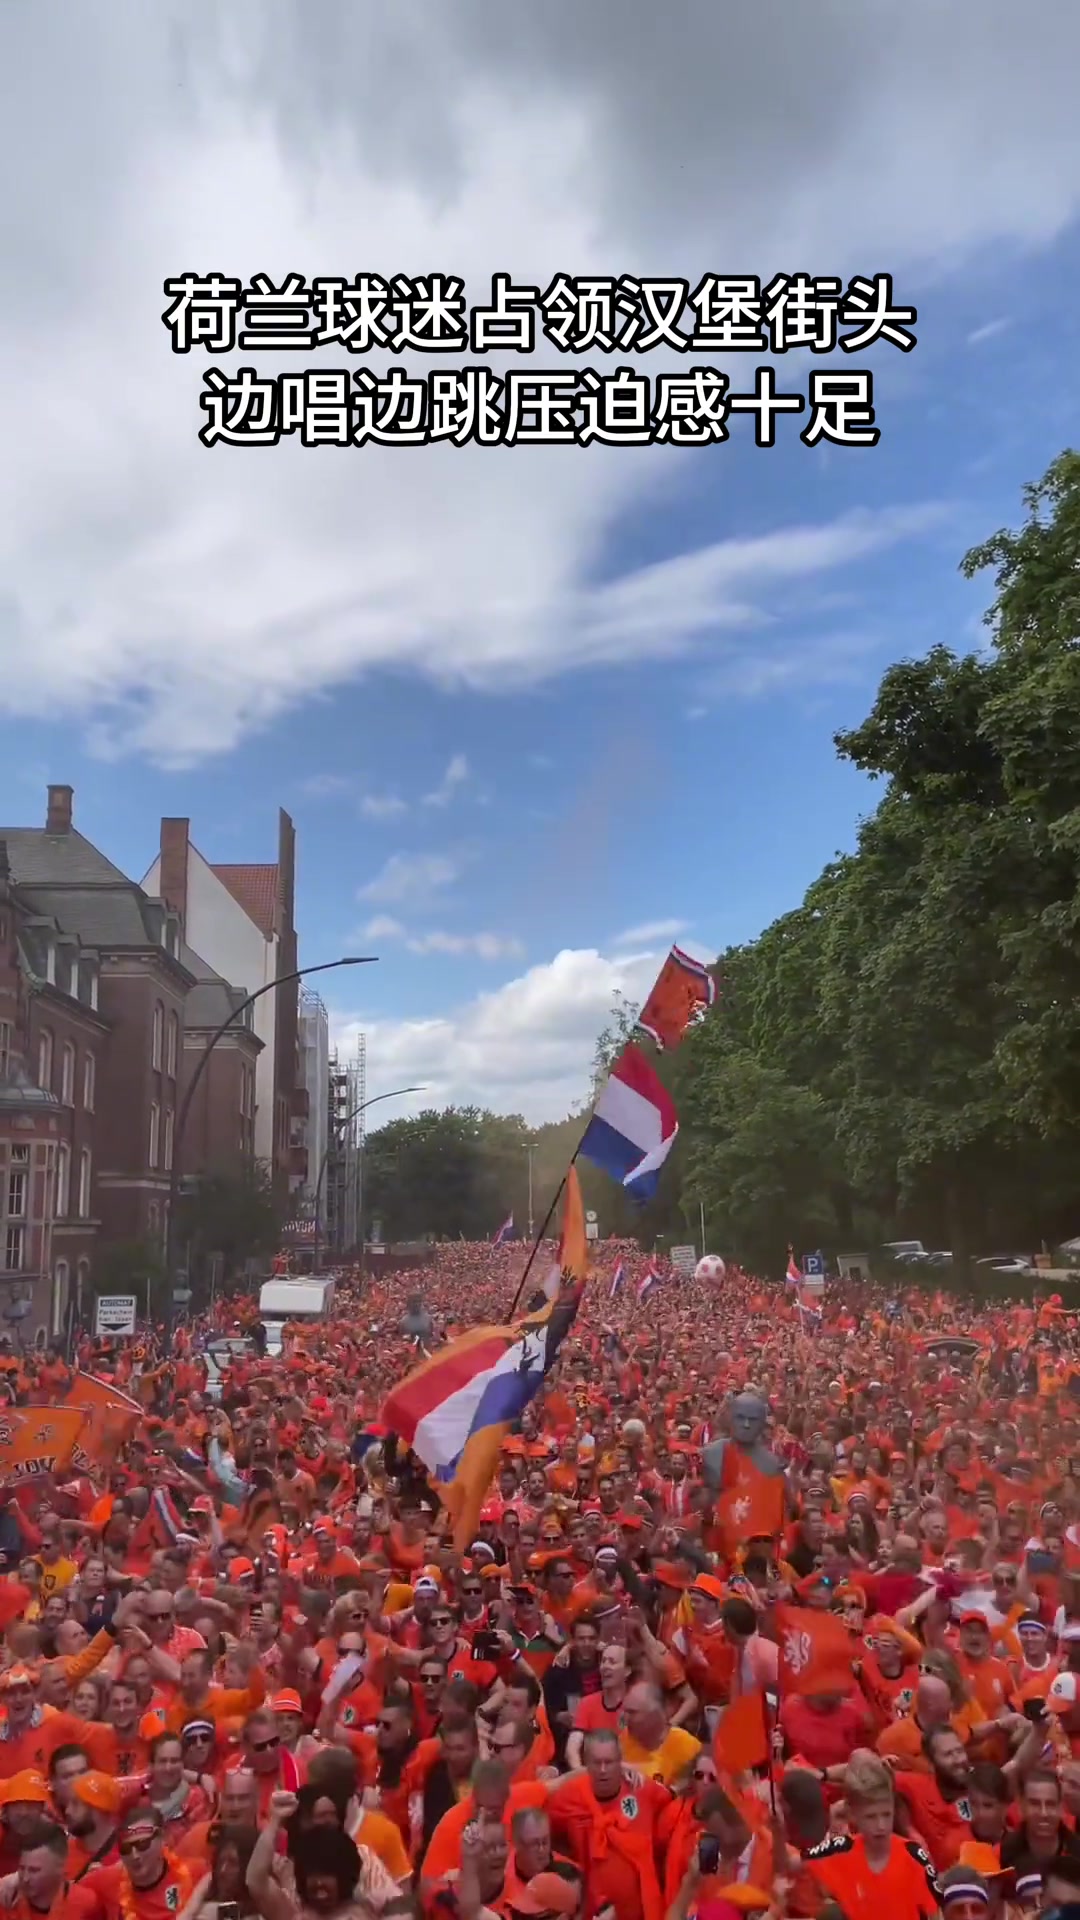 荷兰球迷占领汉堡街头 边唱边跳压迫感十足